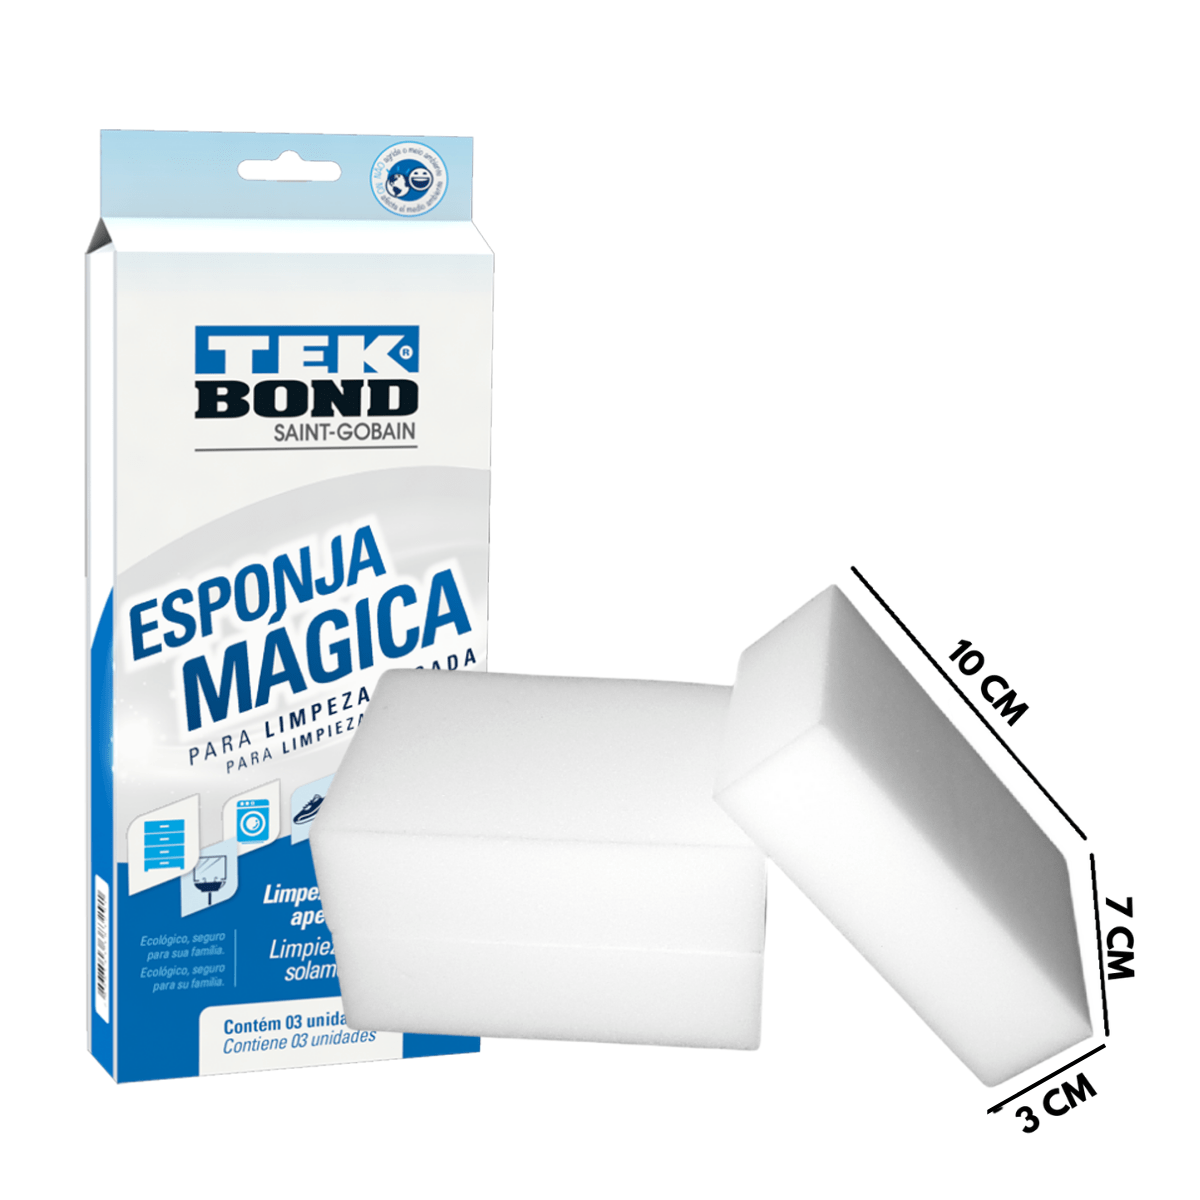 Esponja magica para limpieza pesada multiusos Tekbond (3 por paquete), Materiales De Construcción